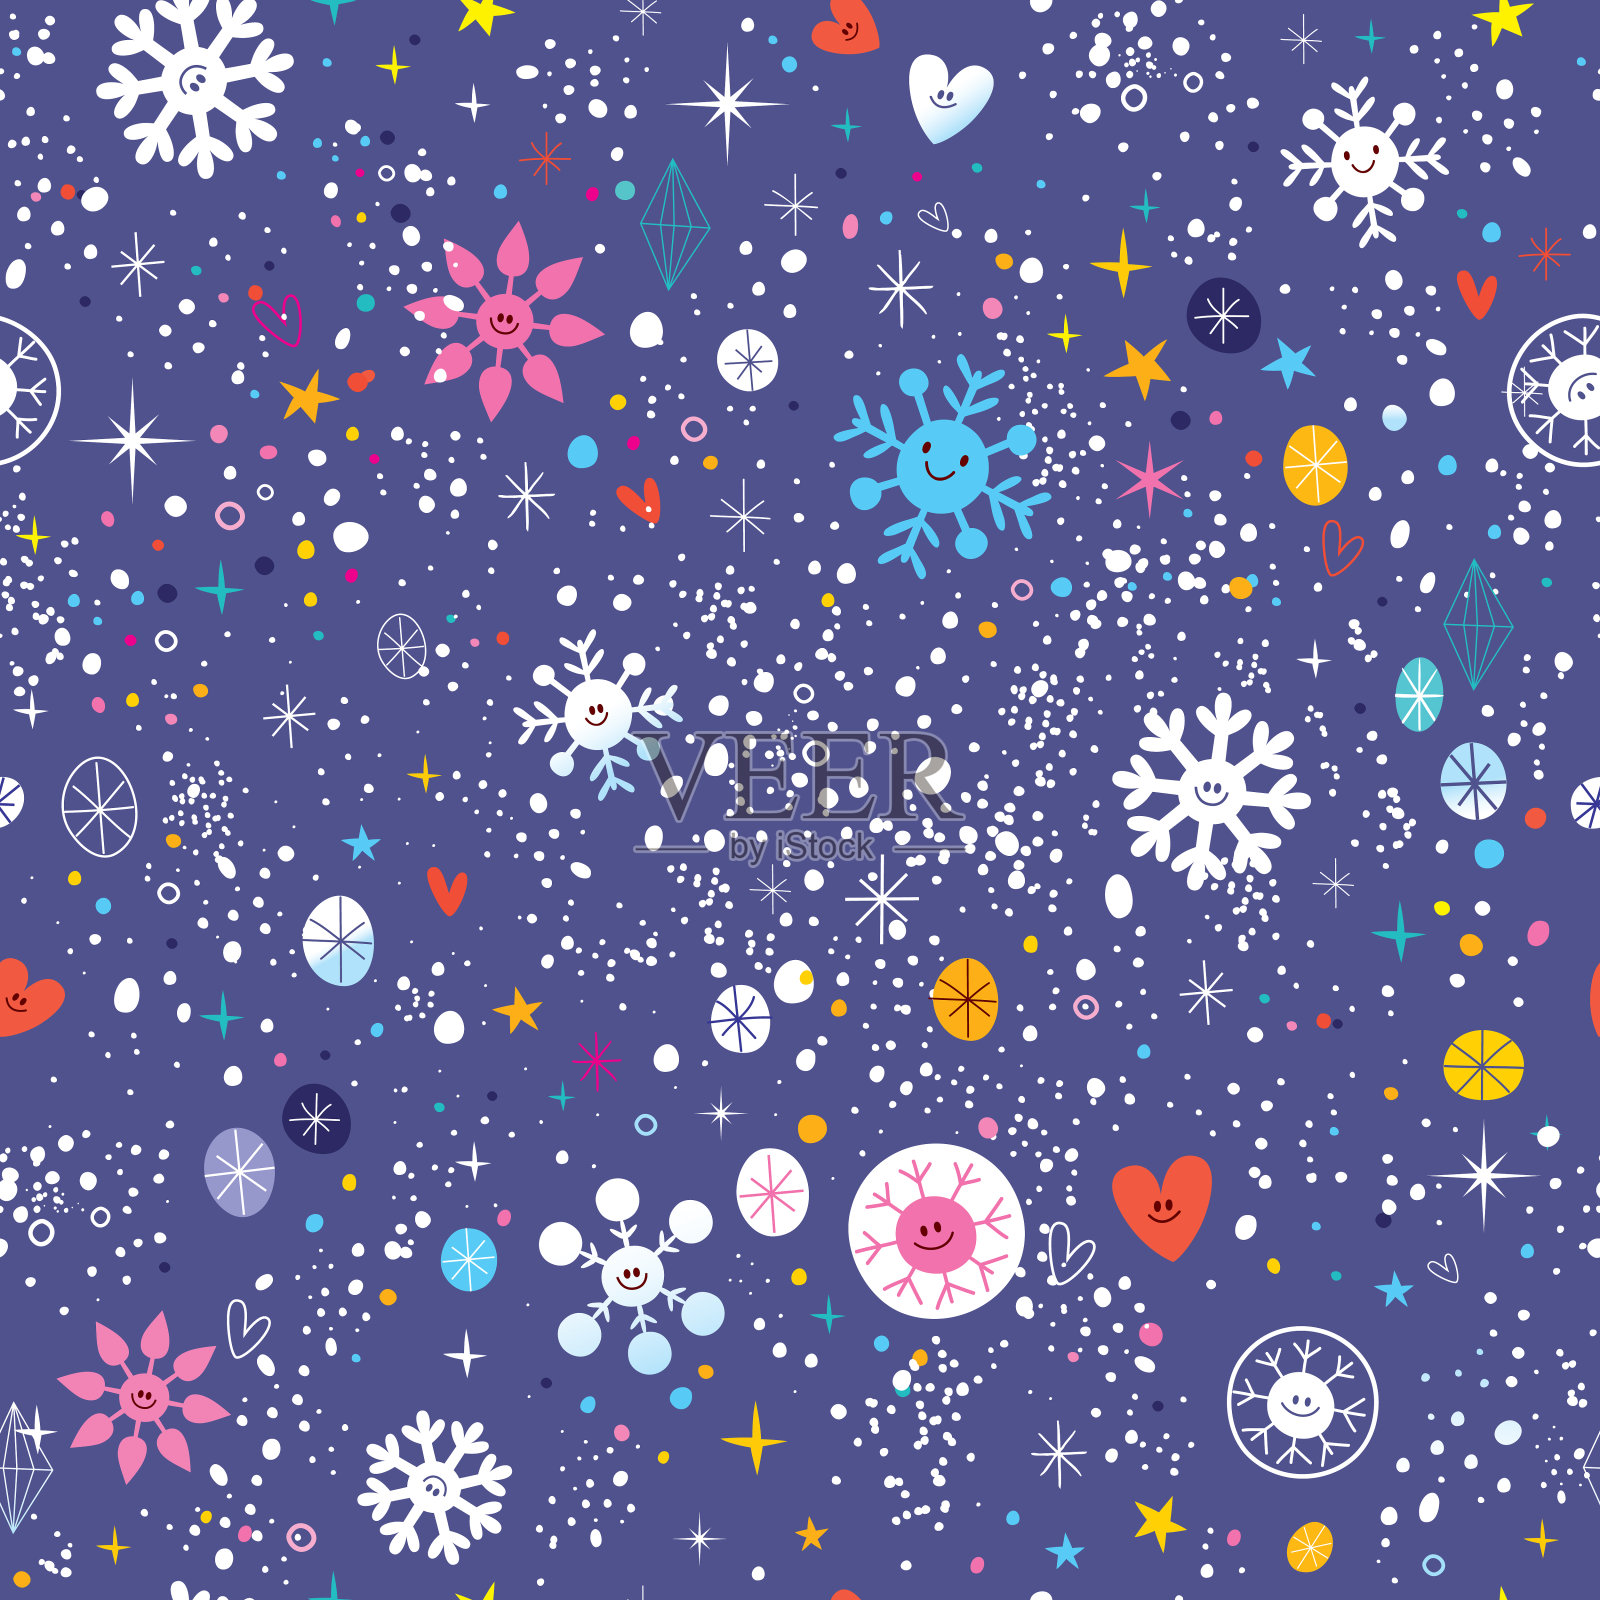 可爱的雪花冬夜天空无缝图案插画图片素材